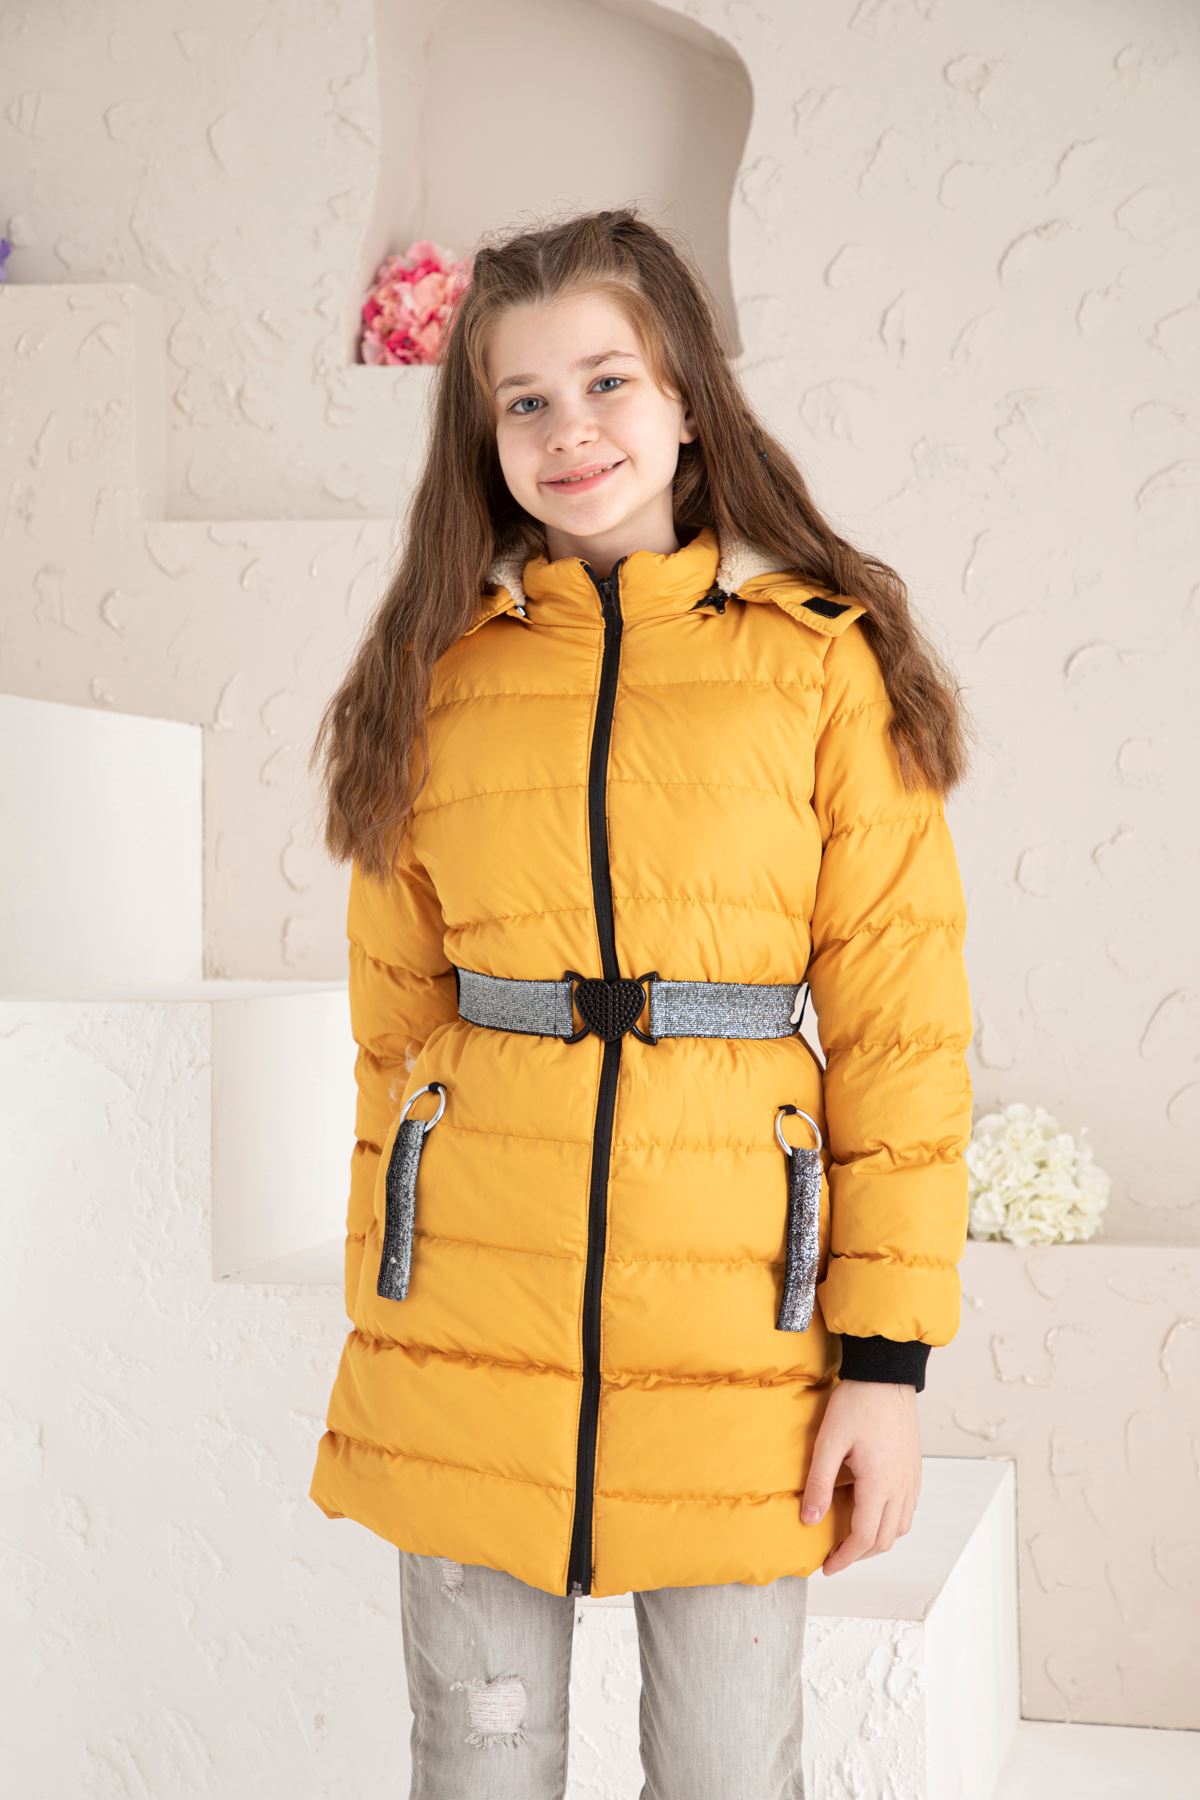 Woolen Inflatable Coat with Waist Belt